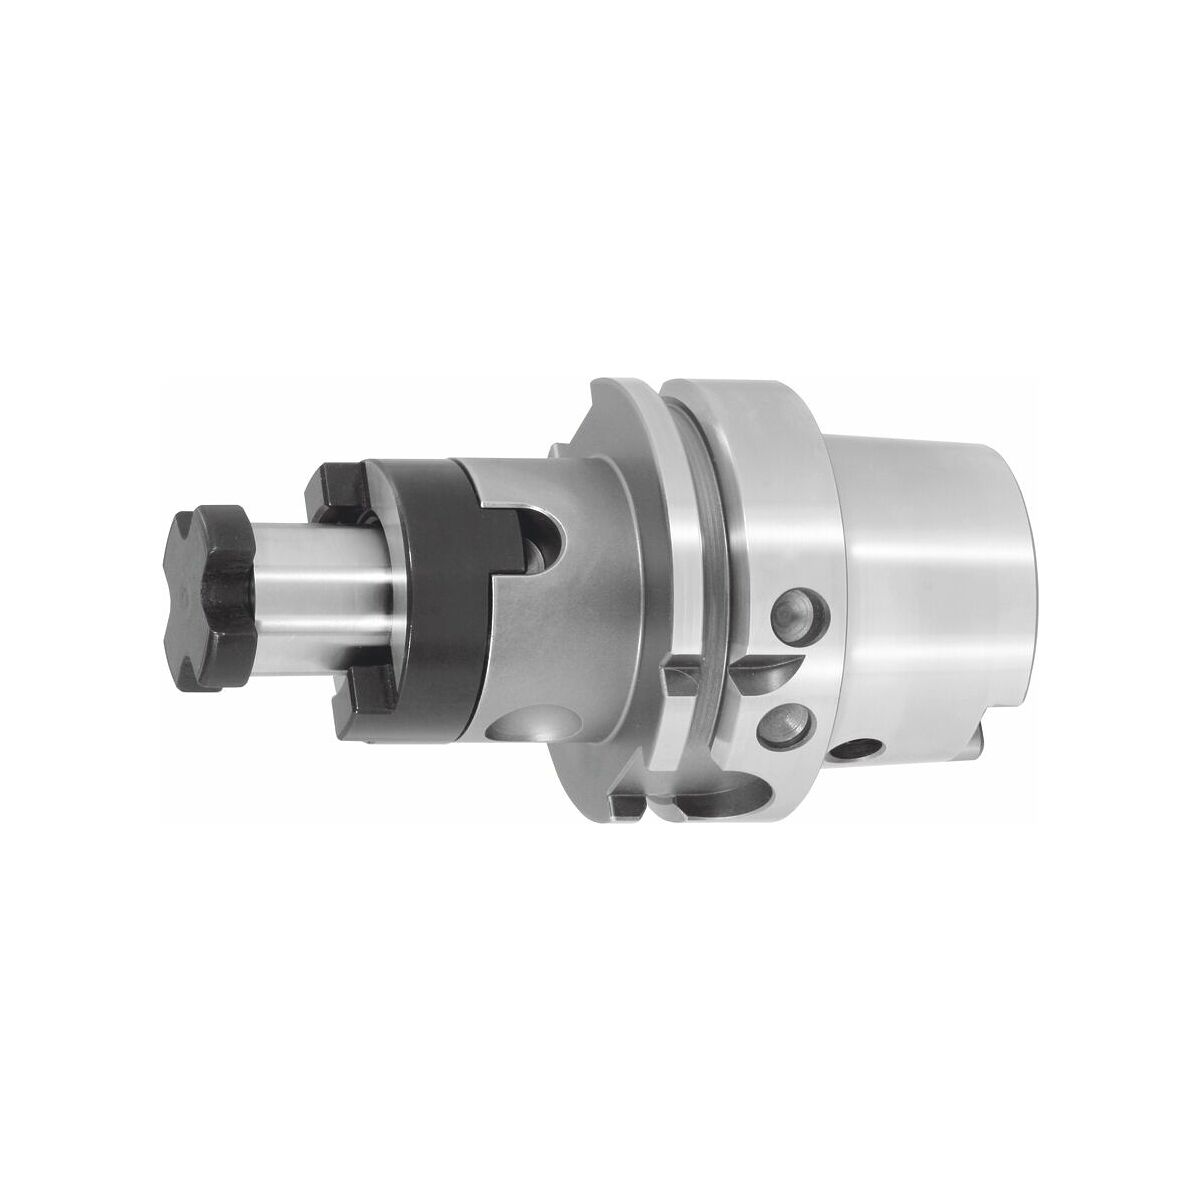 Combination face mill adapter HSK-A 100 A=160 16 mm GARANT